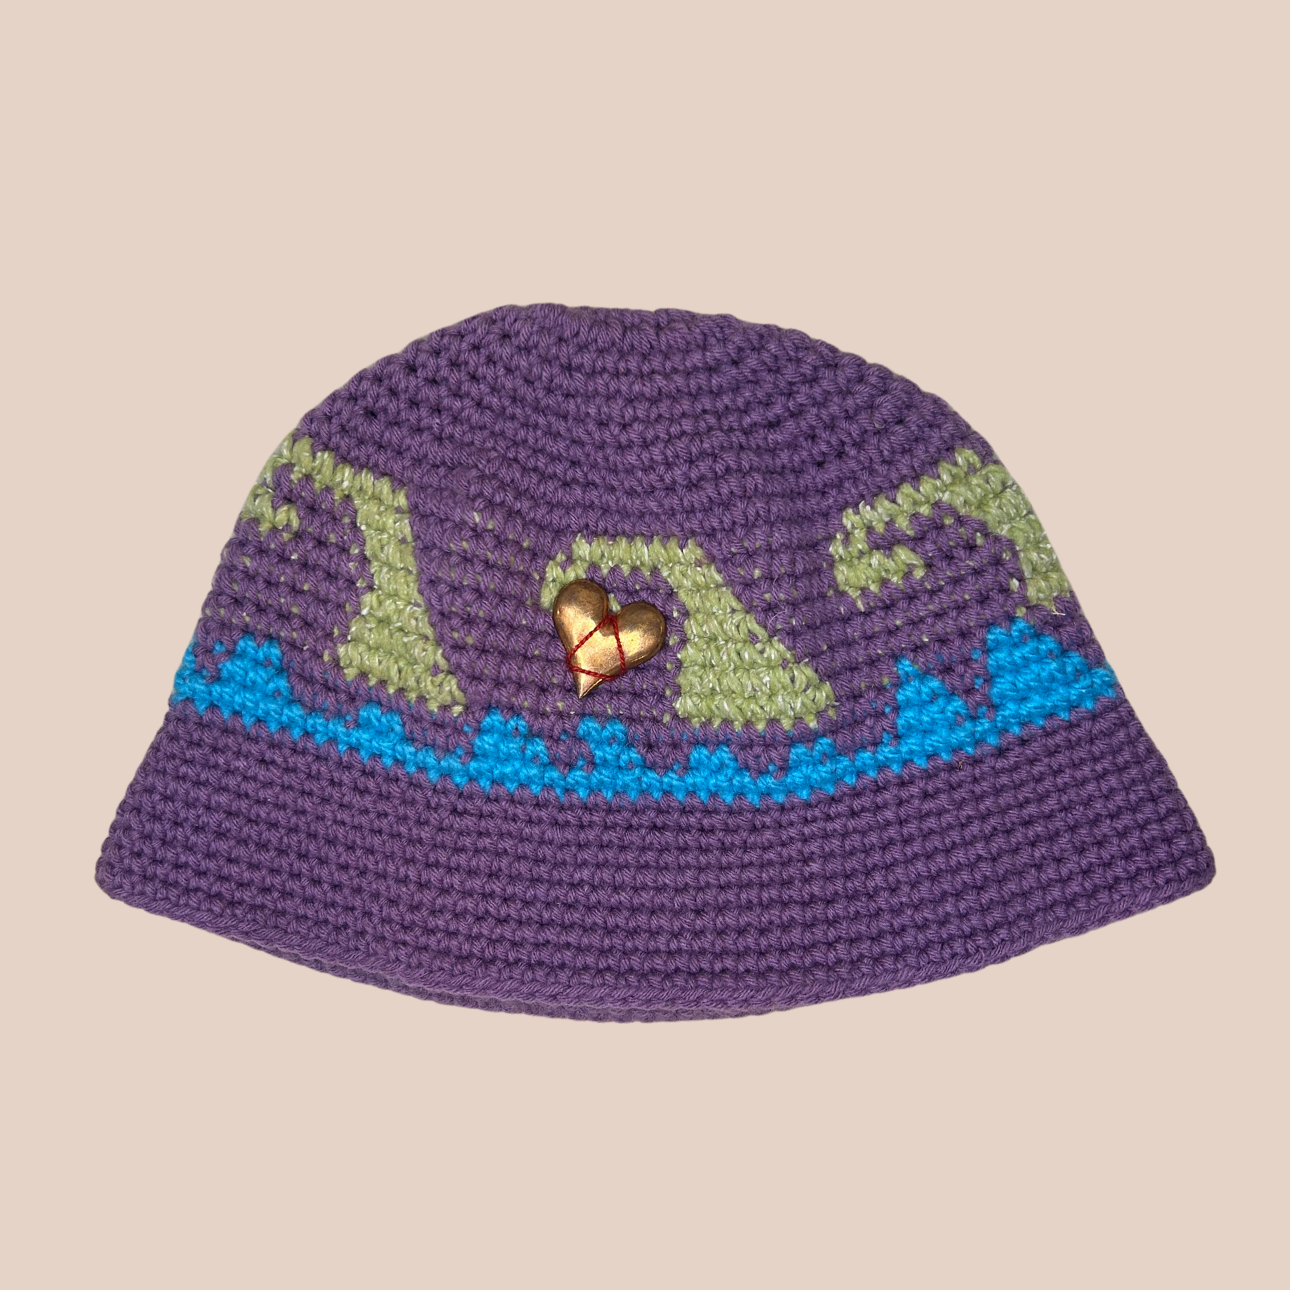 Un bucket hat crocheté en laine et acrylique, arborant des couleurs vives et audacieuses, décoration coeur cousue main